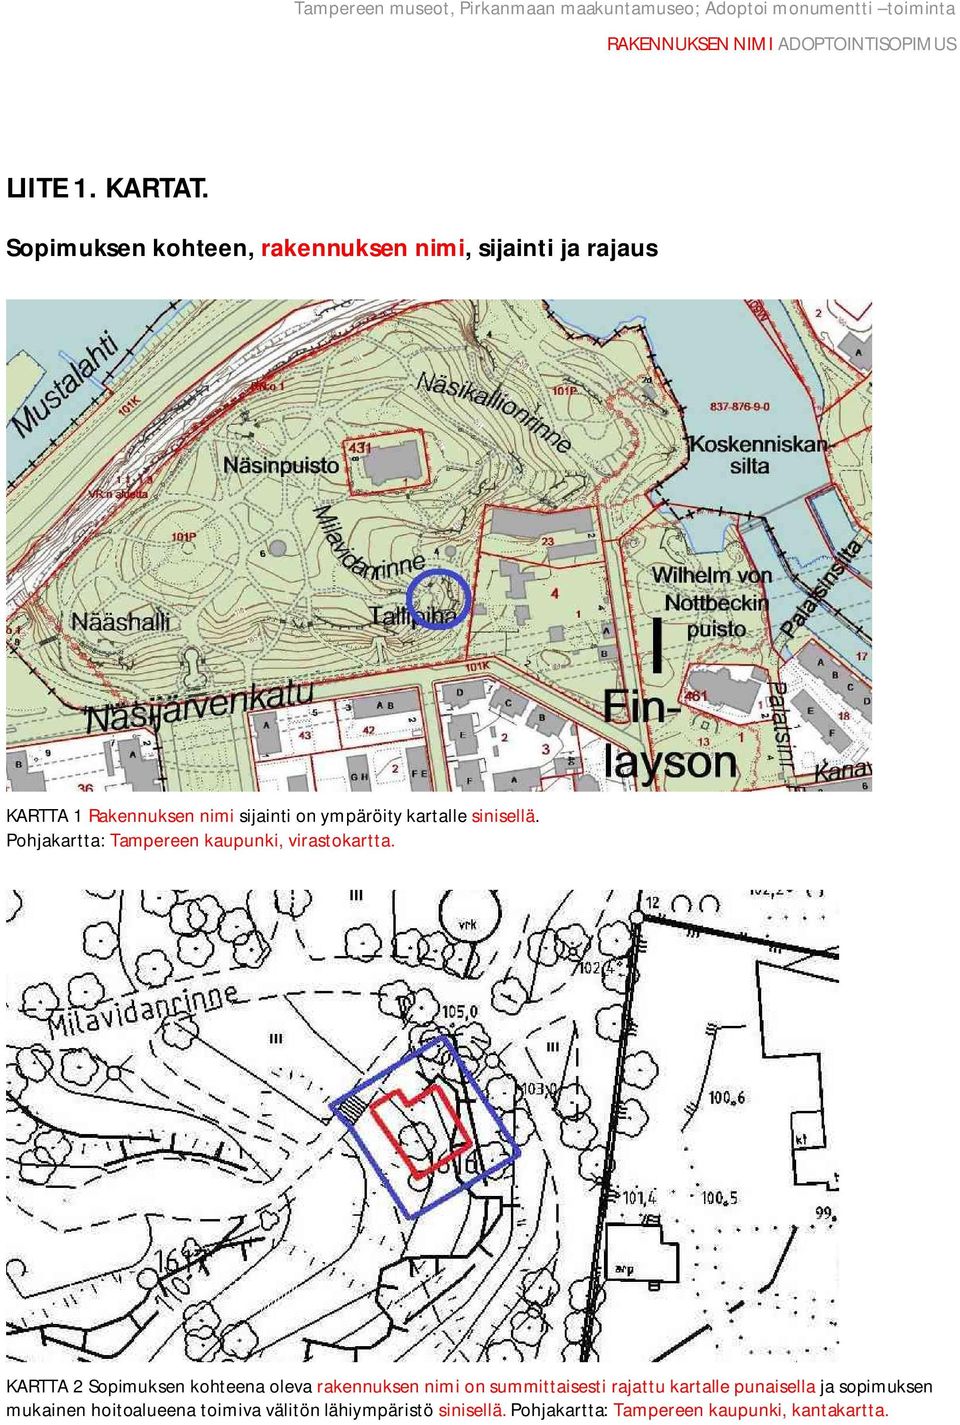 ympäröity kartalle sinisellä. Pohjakartta: Tampereen kaupunki, virastokartta.